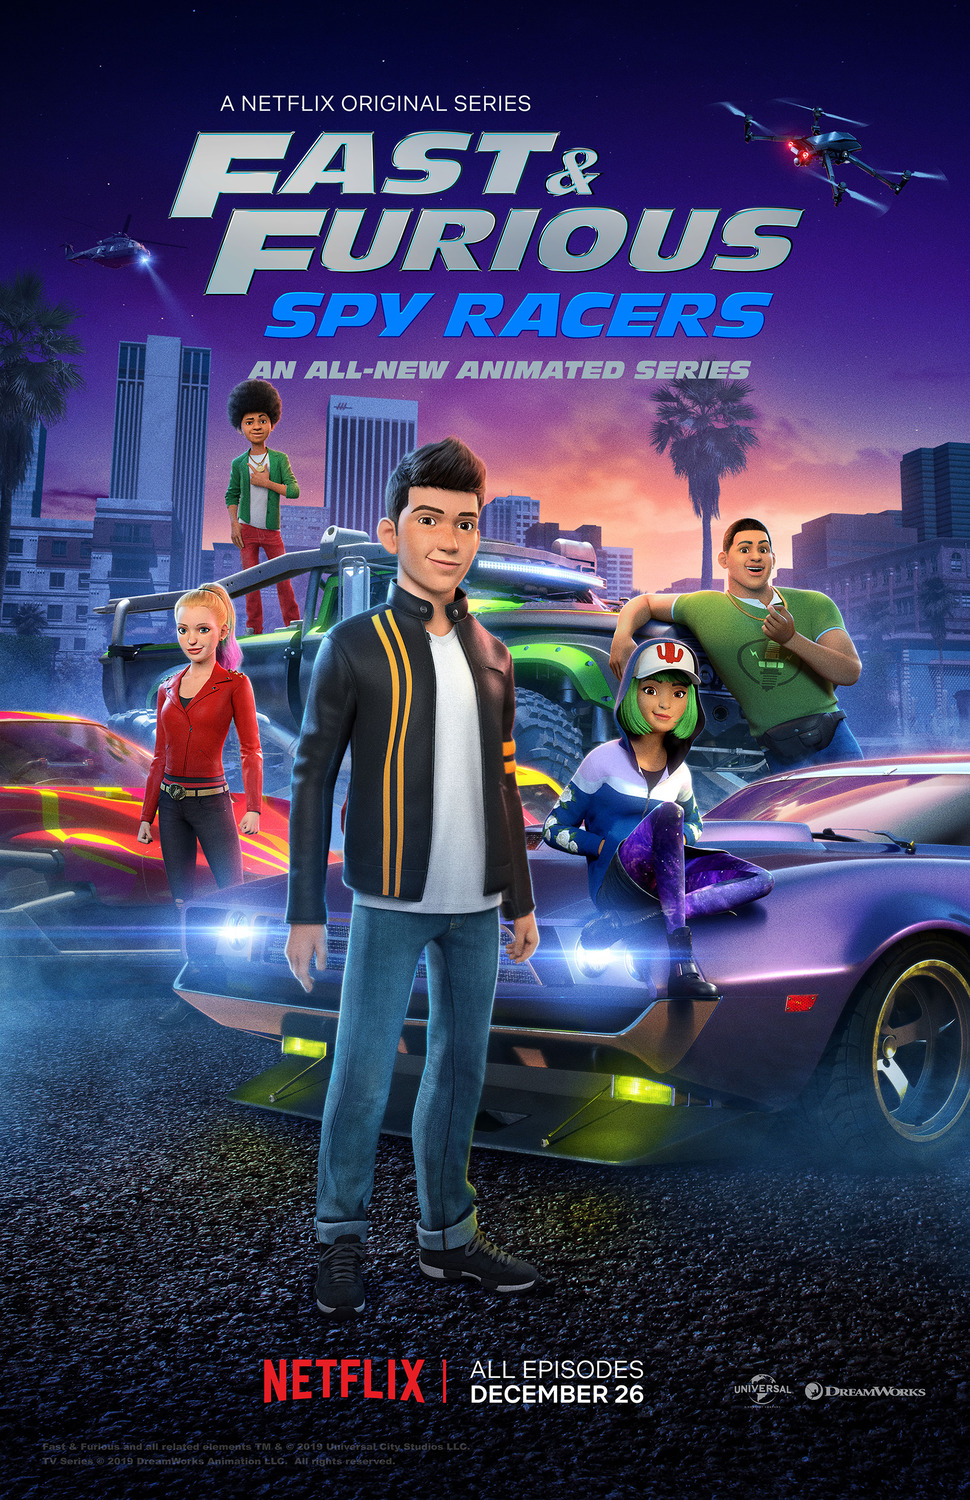 ดูหนังออนไลน์ฟรี Fast & Furious Spy Racers (2019) Season1 EP1 เร็ว…แรง ทะลุนรก ซิ่งสยบโลก ตอนที่ 1  ( พากย์ไทย)